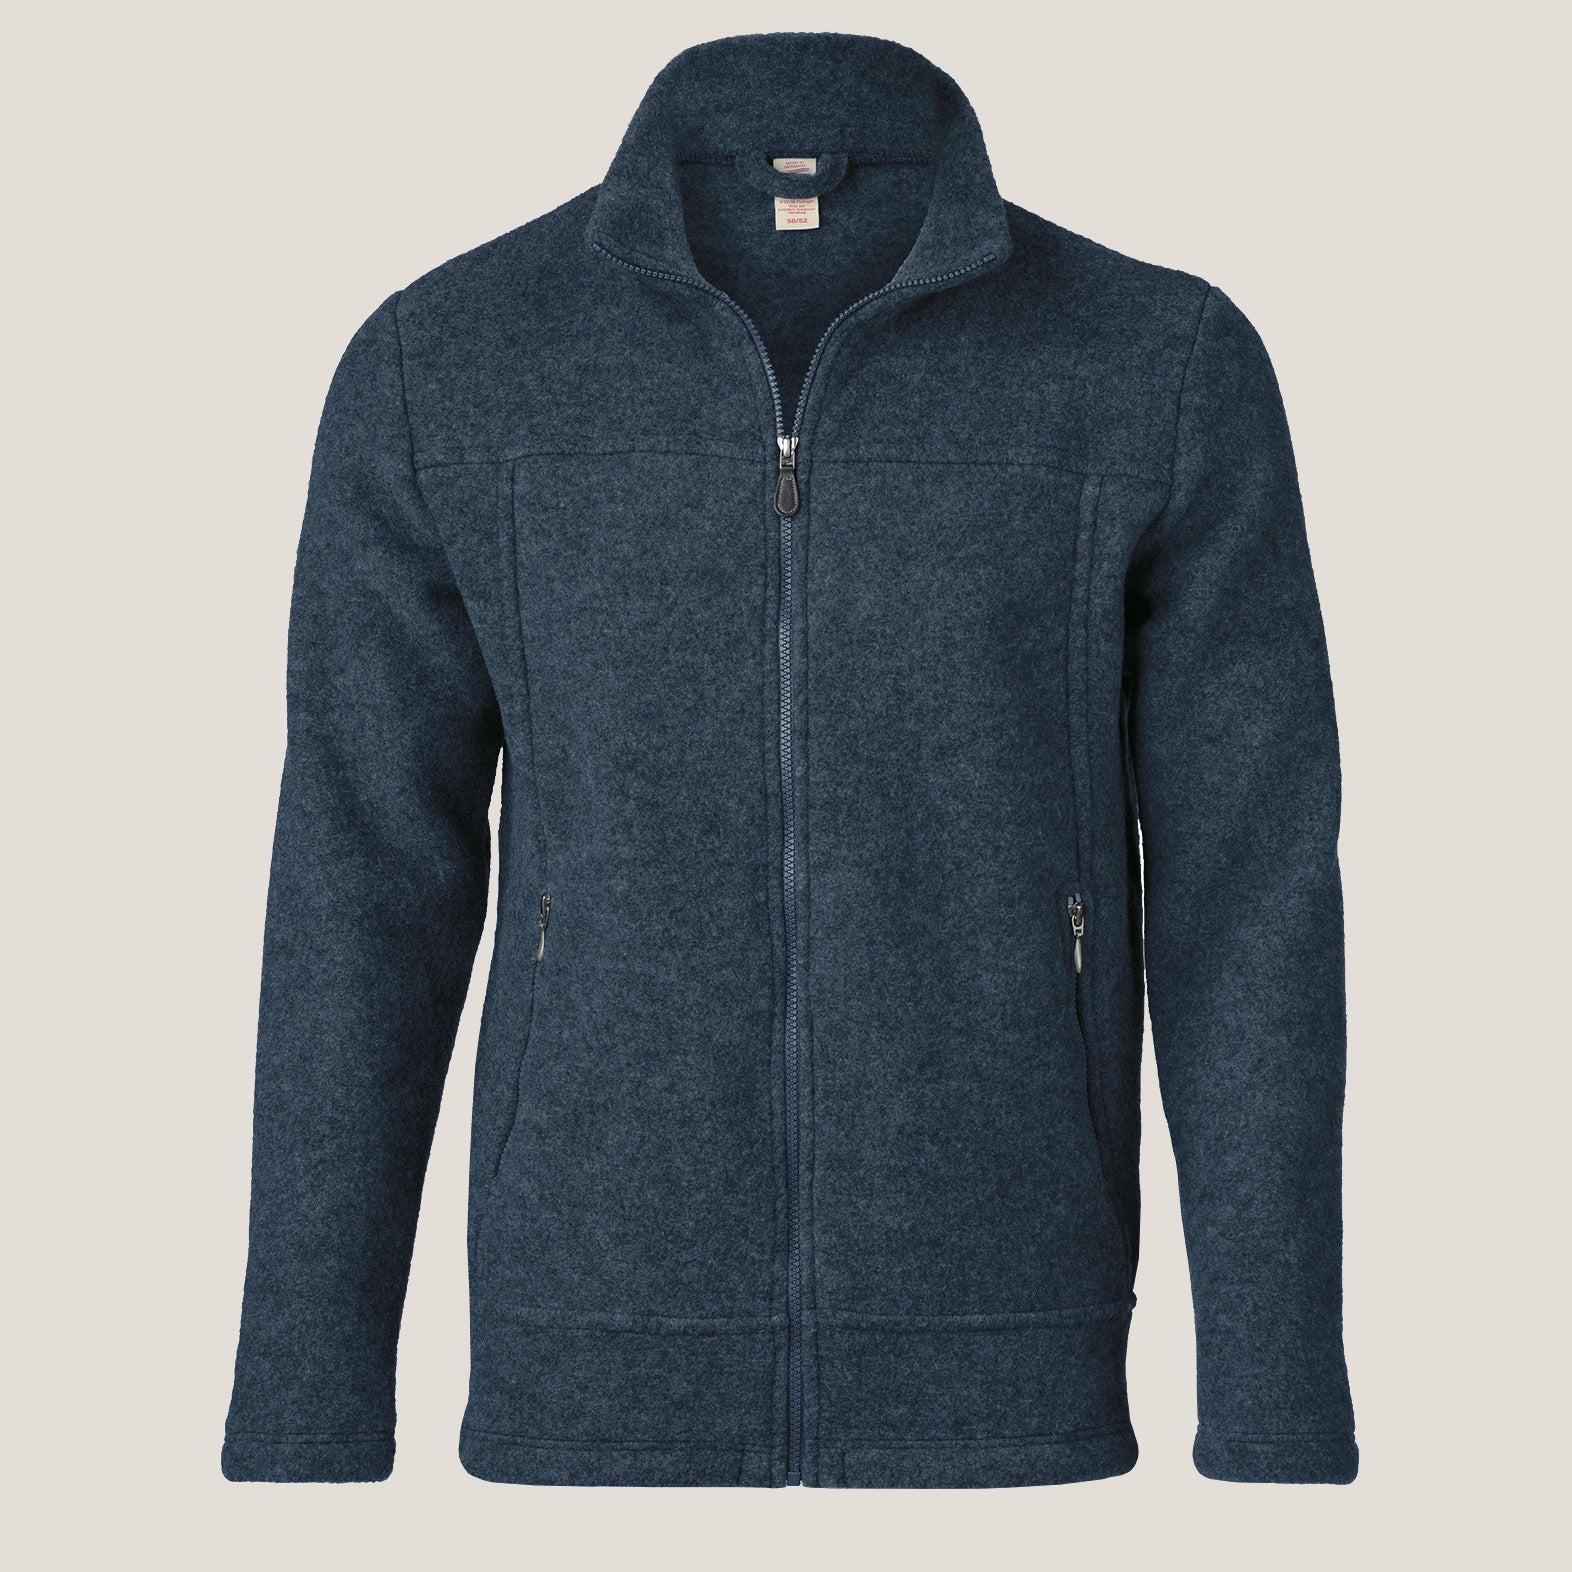 Men's Zip Jacket - 100% Organic Wool Fleece - Atlantic (S-XL) *Pre-order